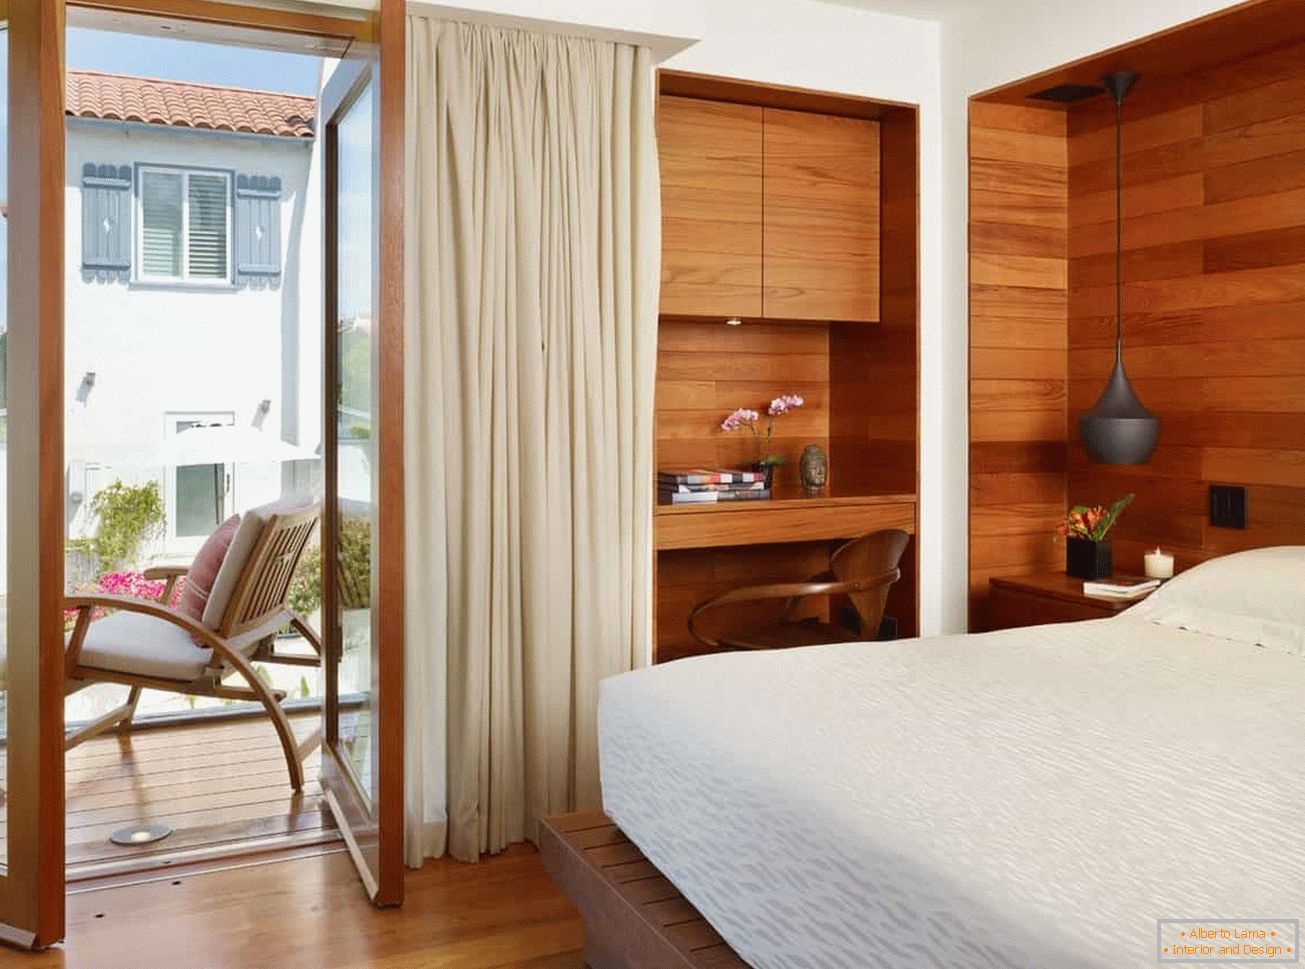 Dormitor mic cu finisaj de perete din lemn